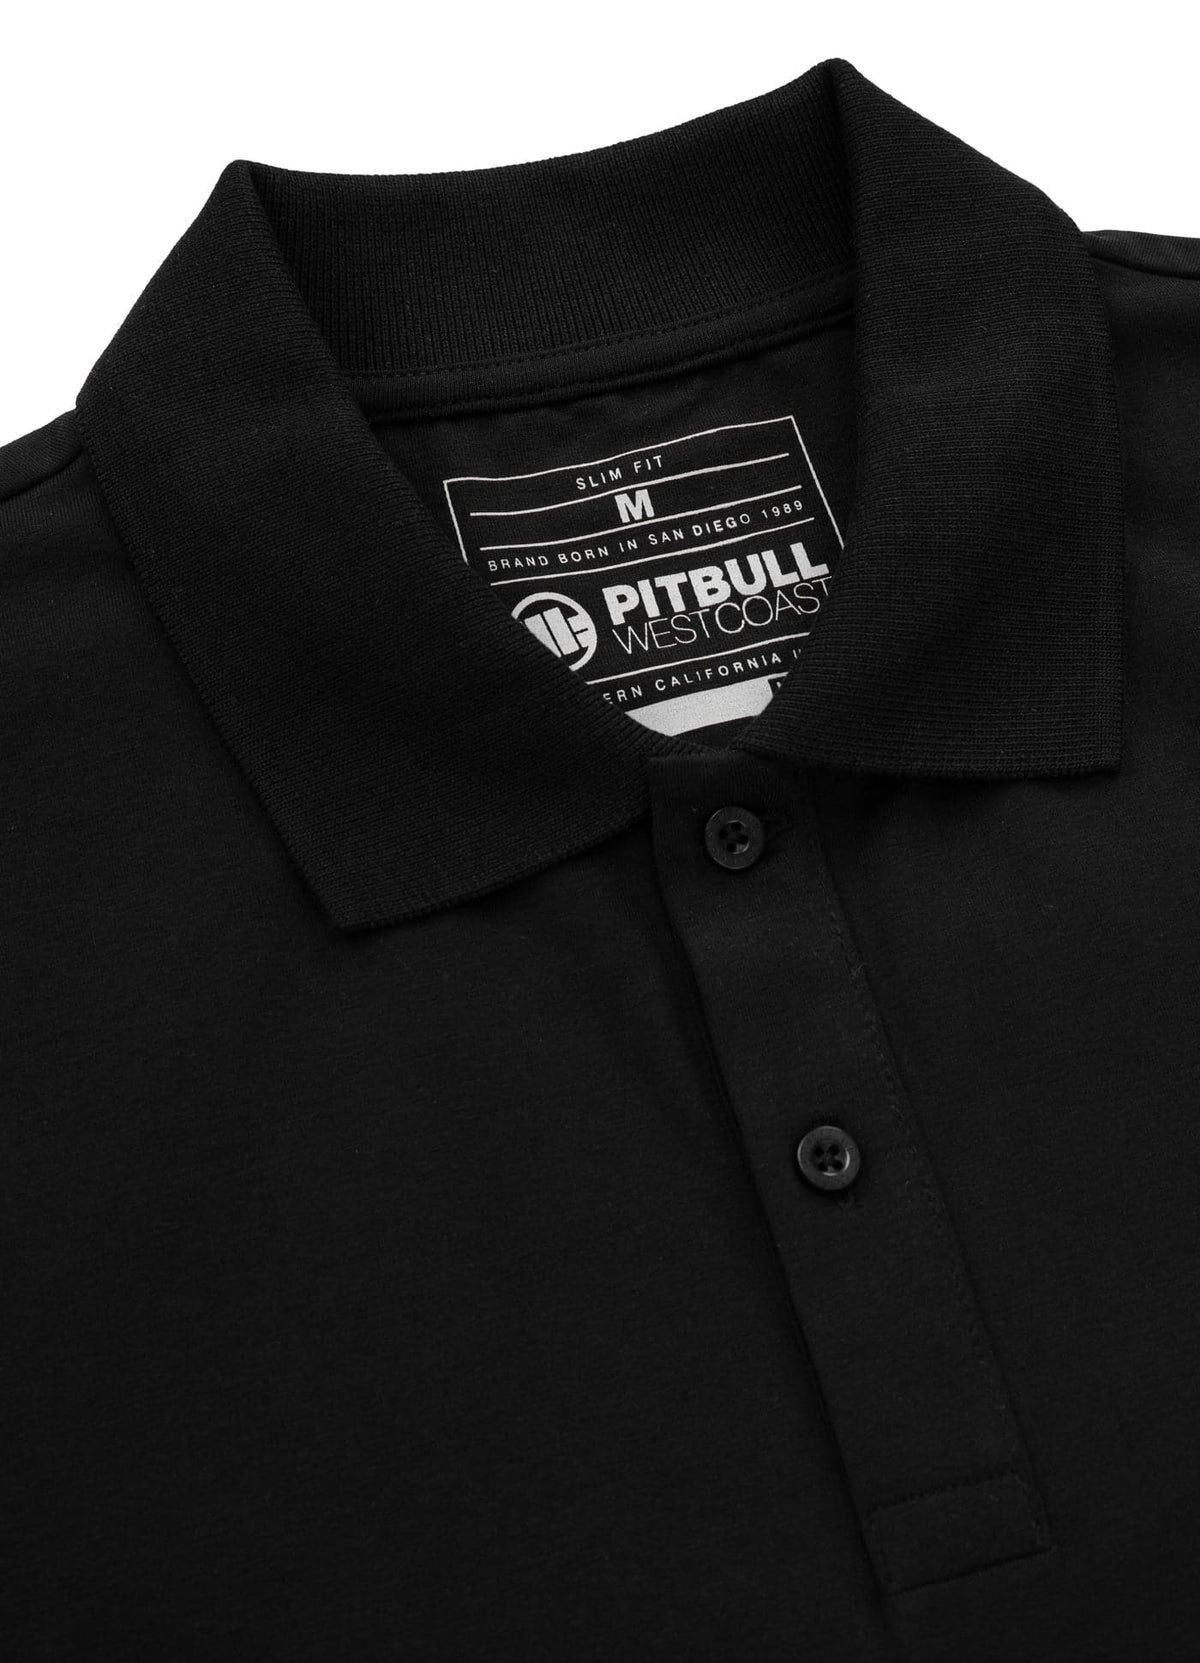 SLIM FIT SMALL LOGO 210 Black Polo T-shirt